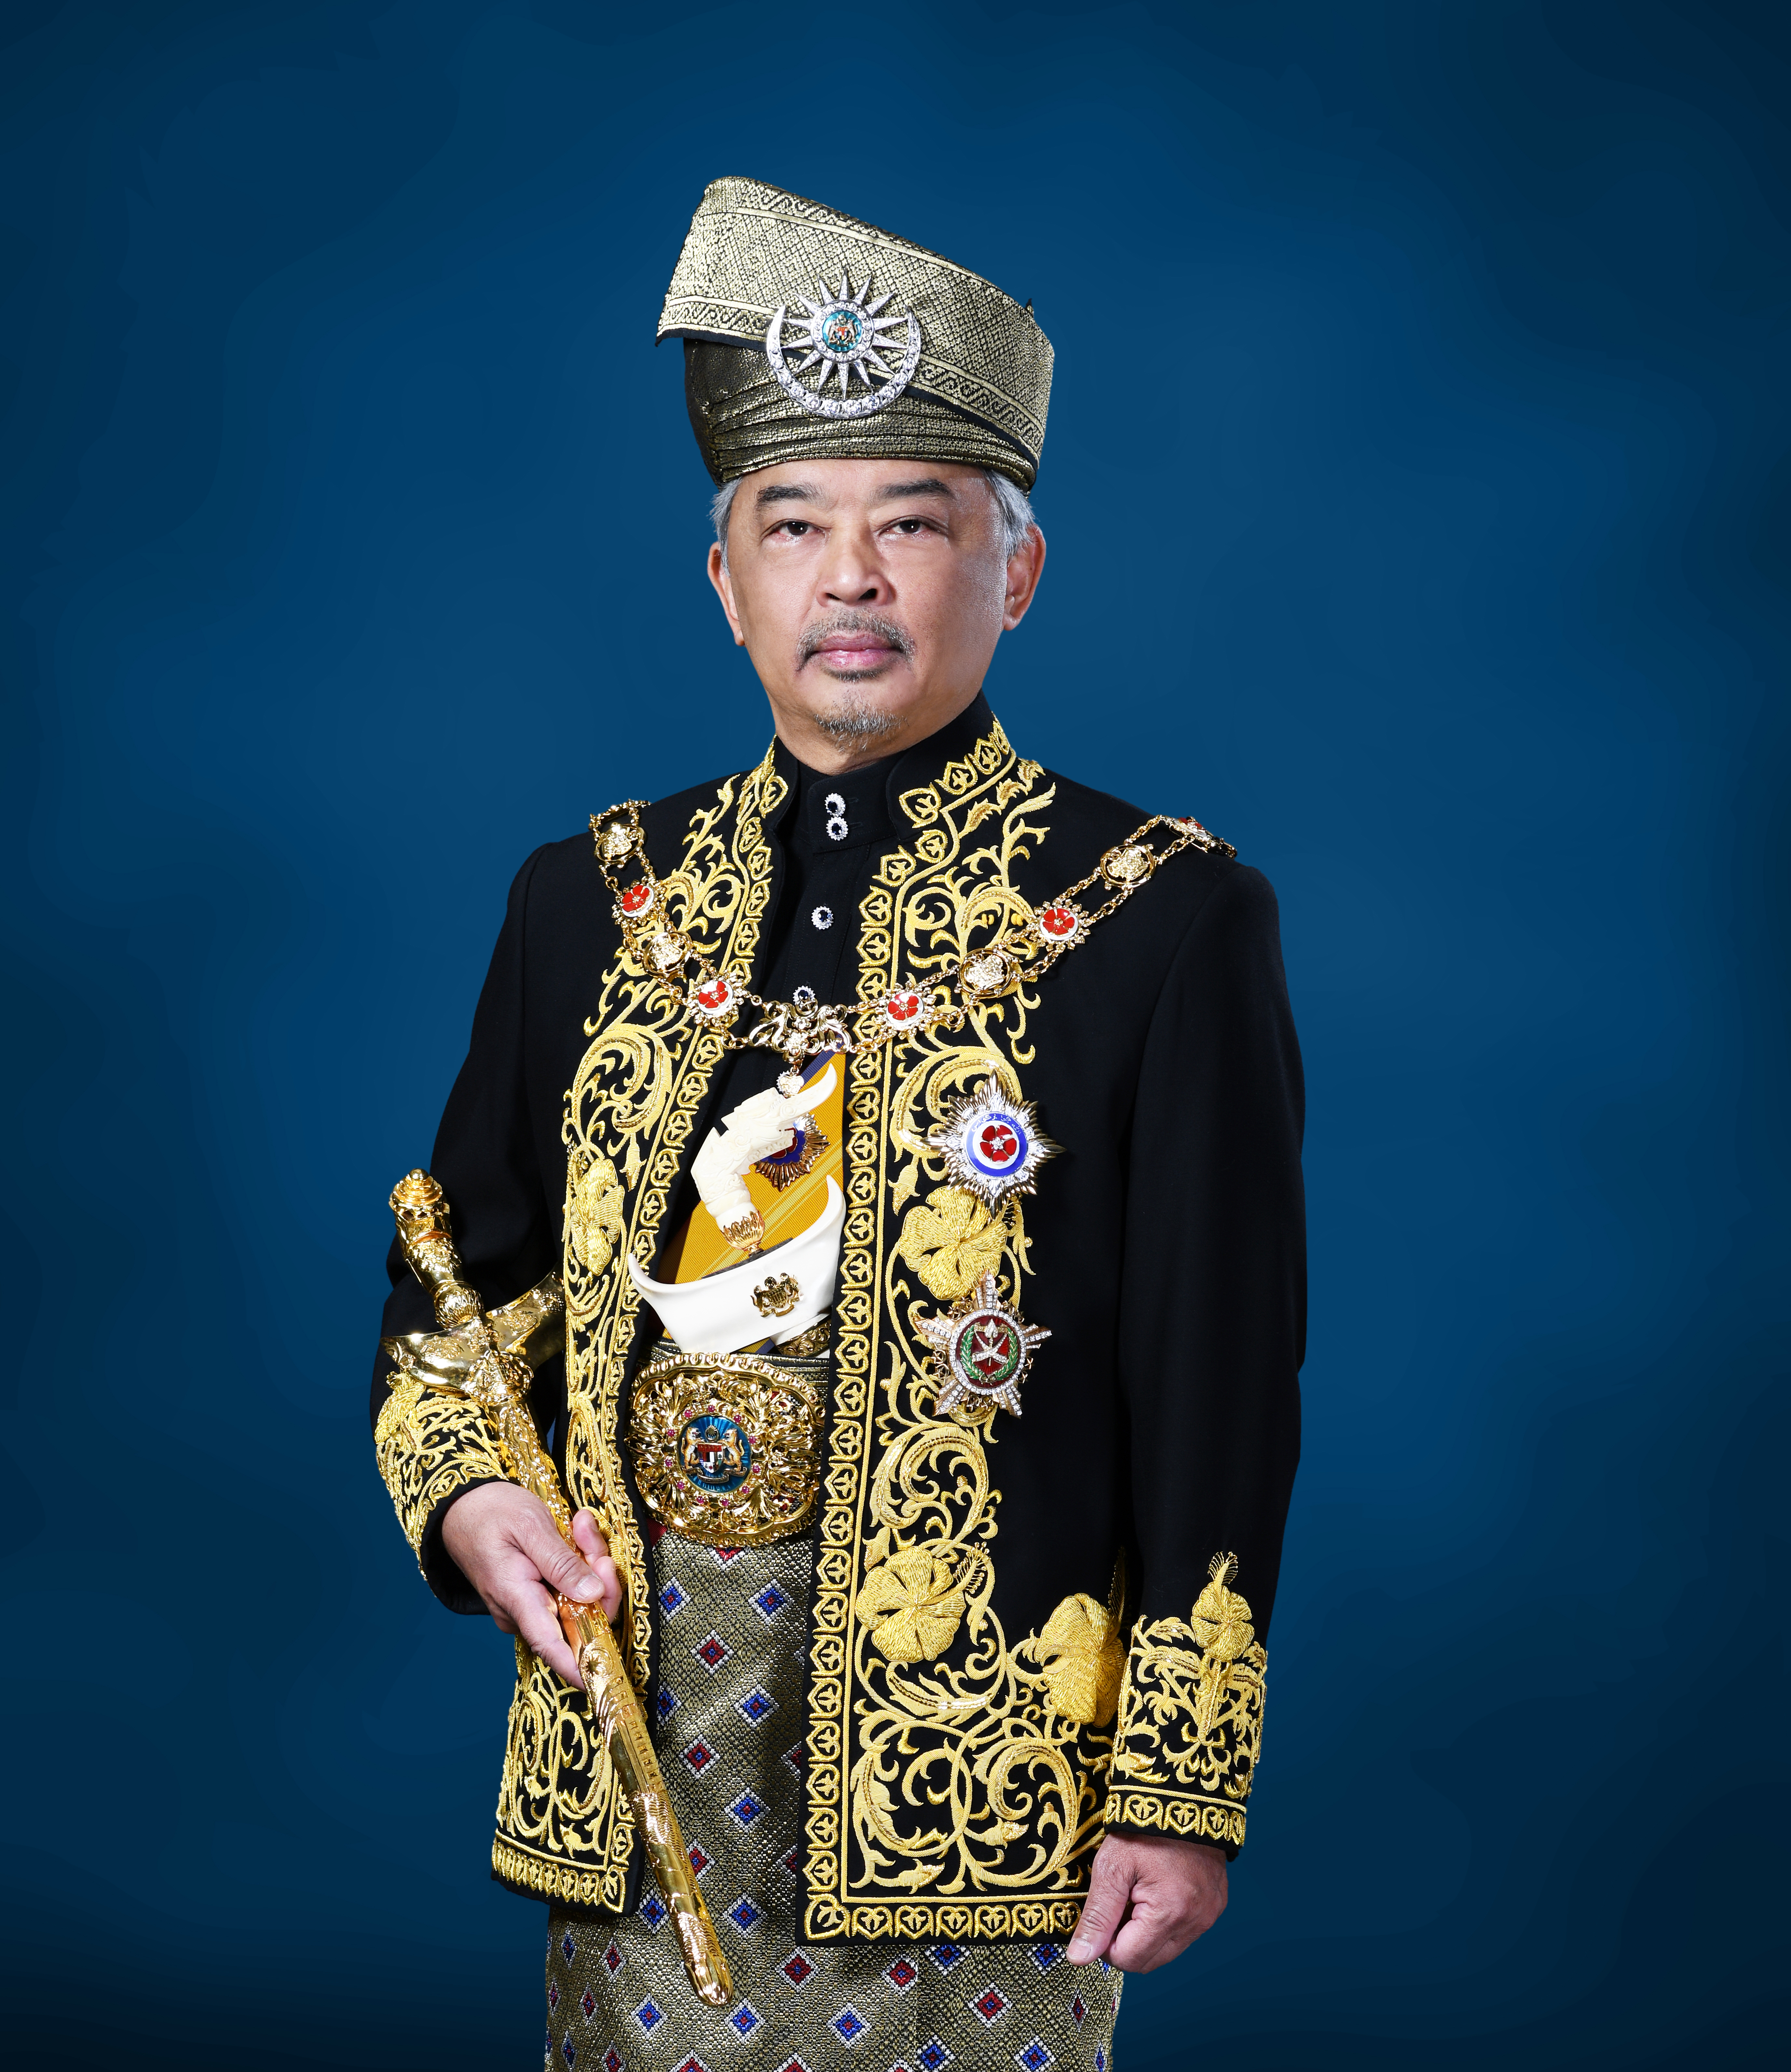 Ketua negara malaysia ialah